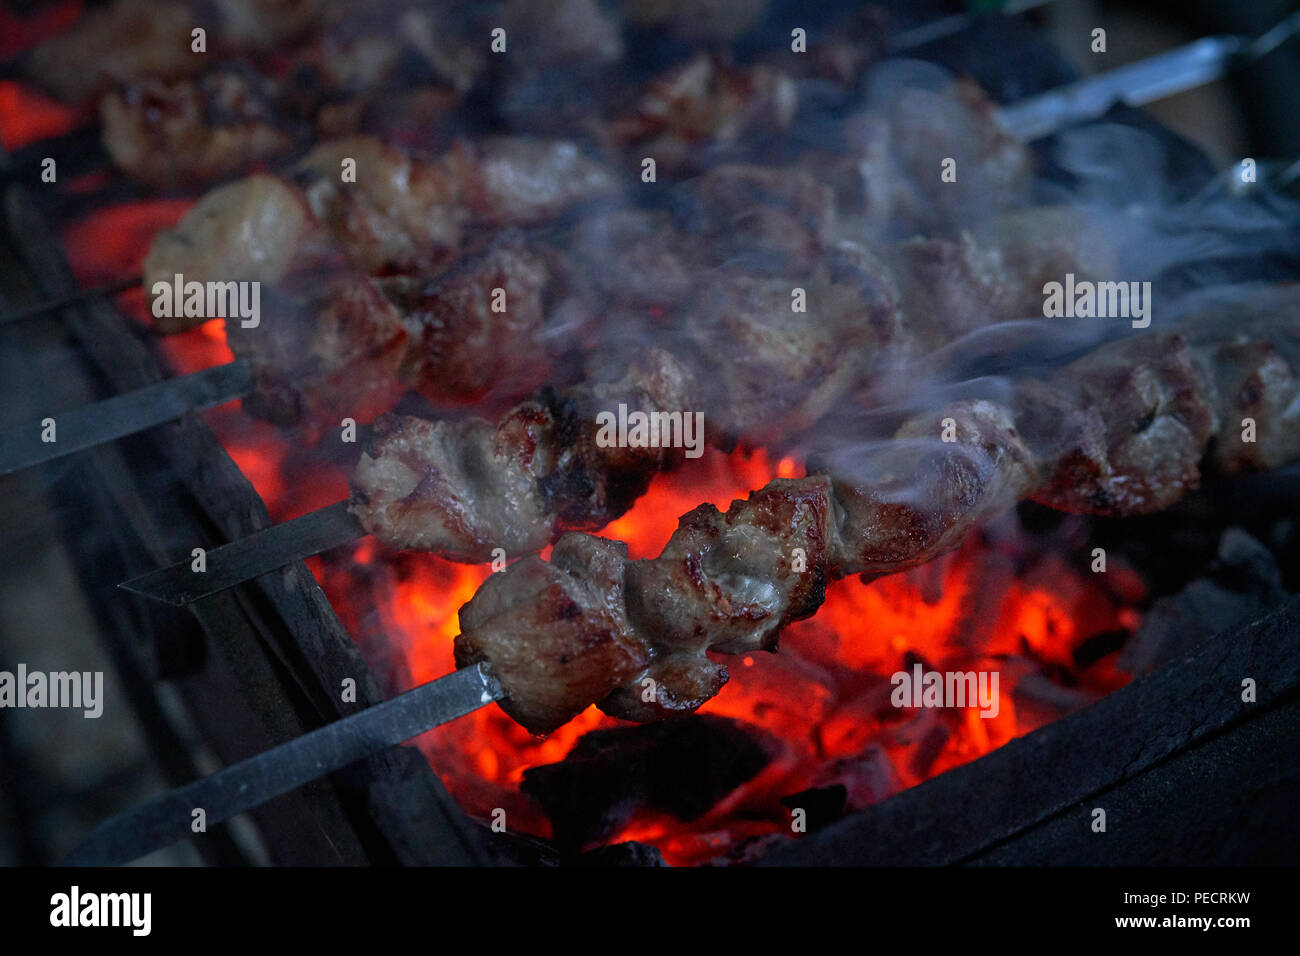 Préparation des brochettes sur un barbecue sur charbon de bois. Des morceaux de viande sur des brochettes. Shish kebab préparer le feu. Banque D'Images